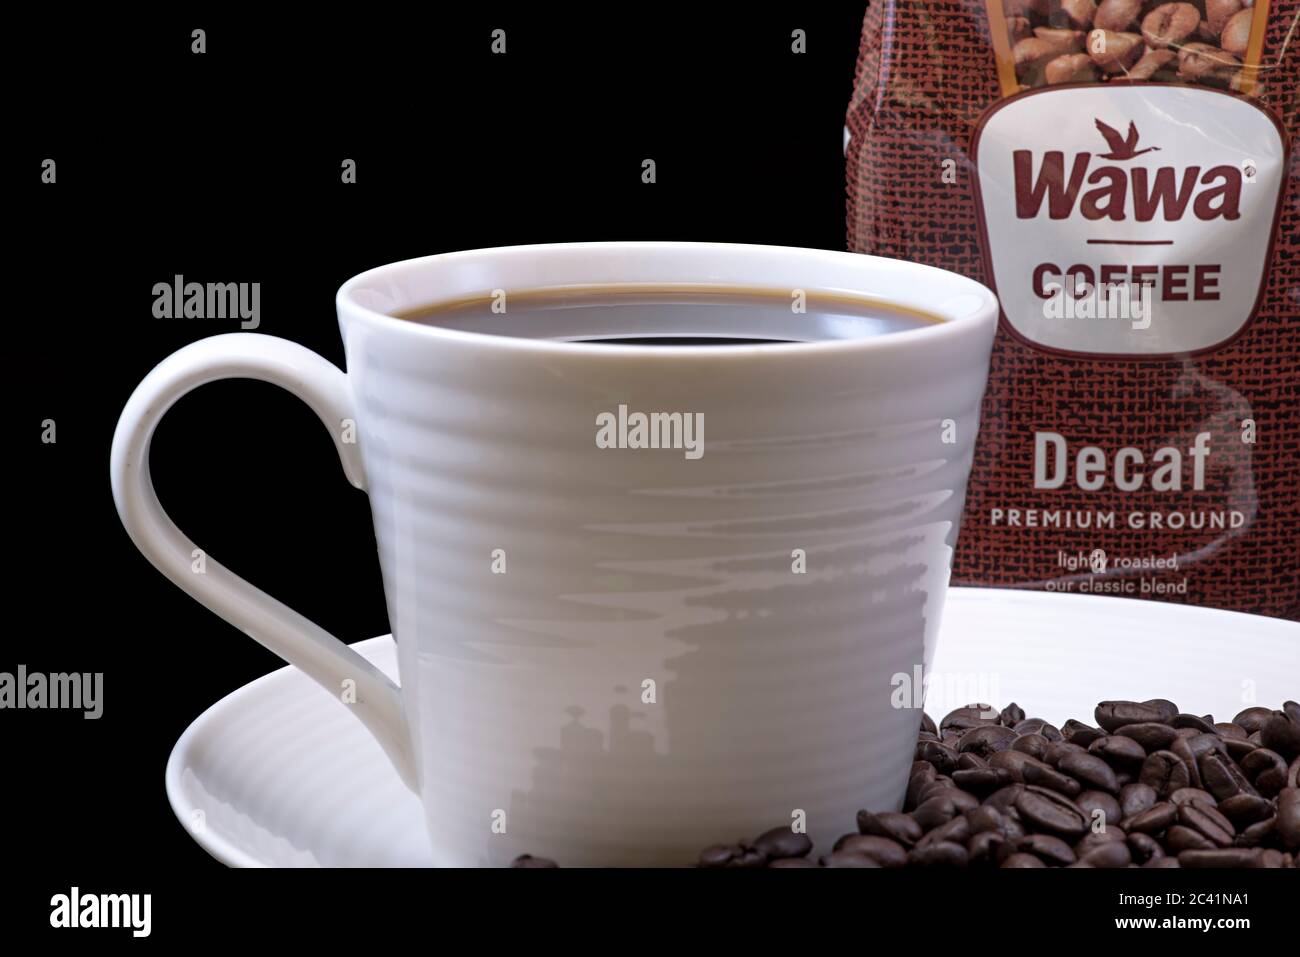 Wawa koffeinfreien Kaffeetasche Nahaufnahme mit einer gebrauten Tasse Wawa Kaffee, weiße Tasse auf einem weißen Teller, Kaffeebohnen und einem festen schwarzen Hintergrund für Ausschnitte Stockfoto